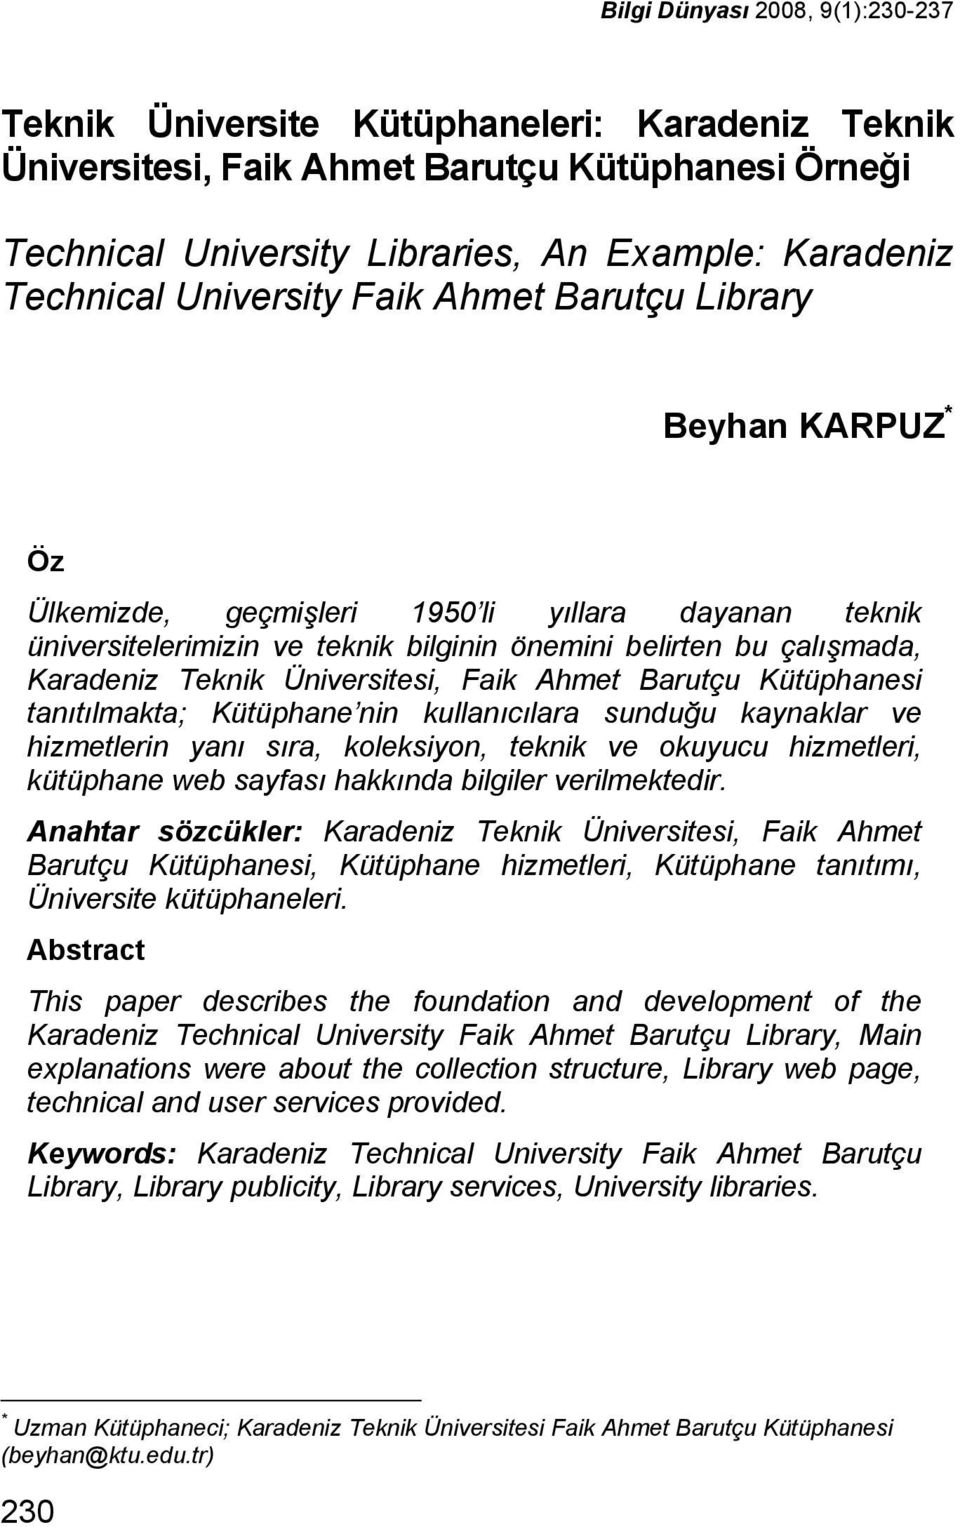 Üniversitesi, Faik Ahmet Barutçu Kütüphanesi tanıtılmakta; Kütüphane nin kullanıcılara sunduğu kaynaklar ve hizmetlerin yanı sıra, koleksiyon, teknik ve okuyucu hizmetleri, kütüphane web sayfası